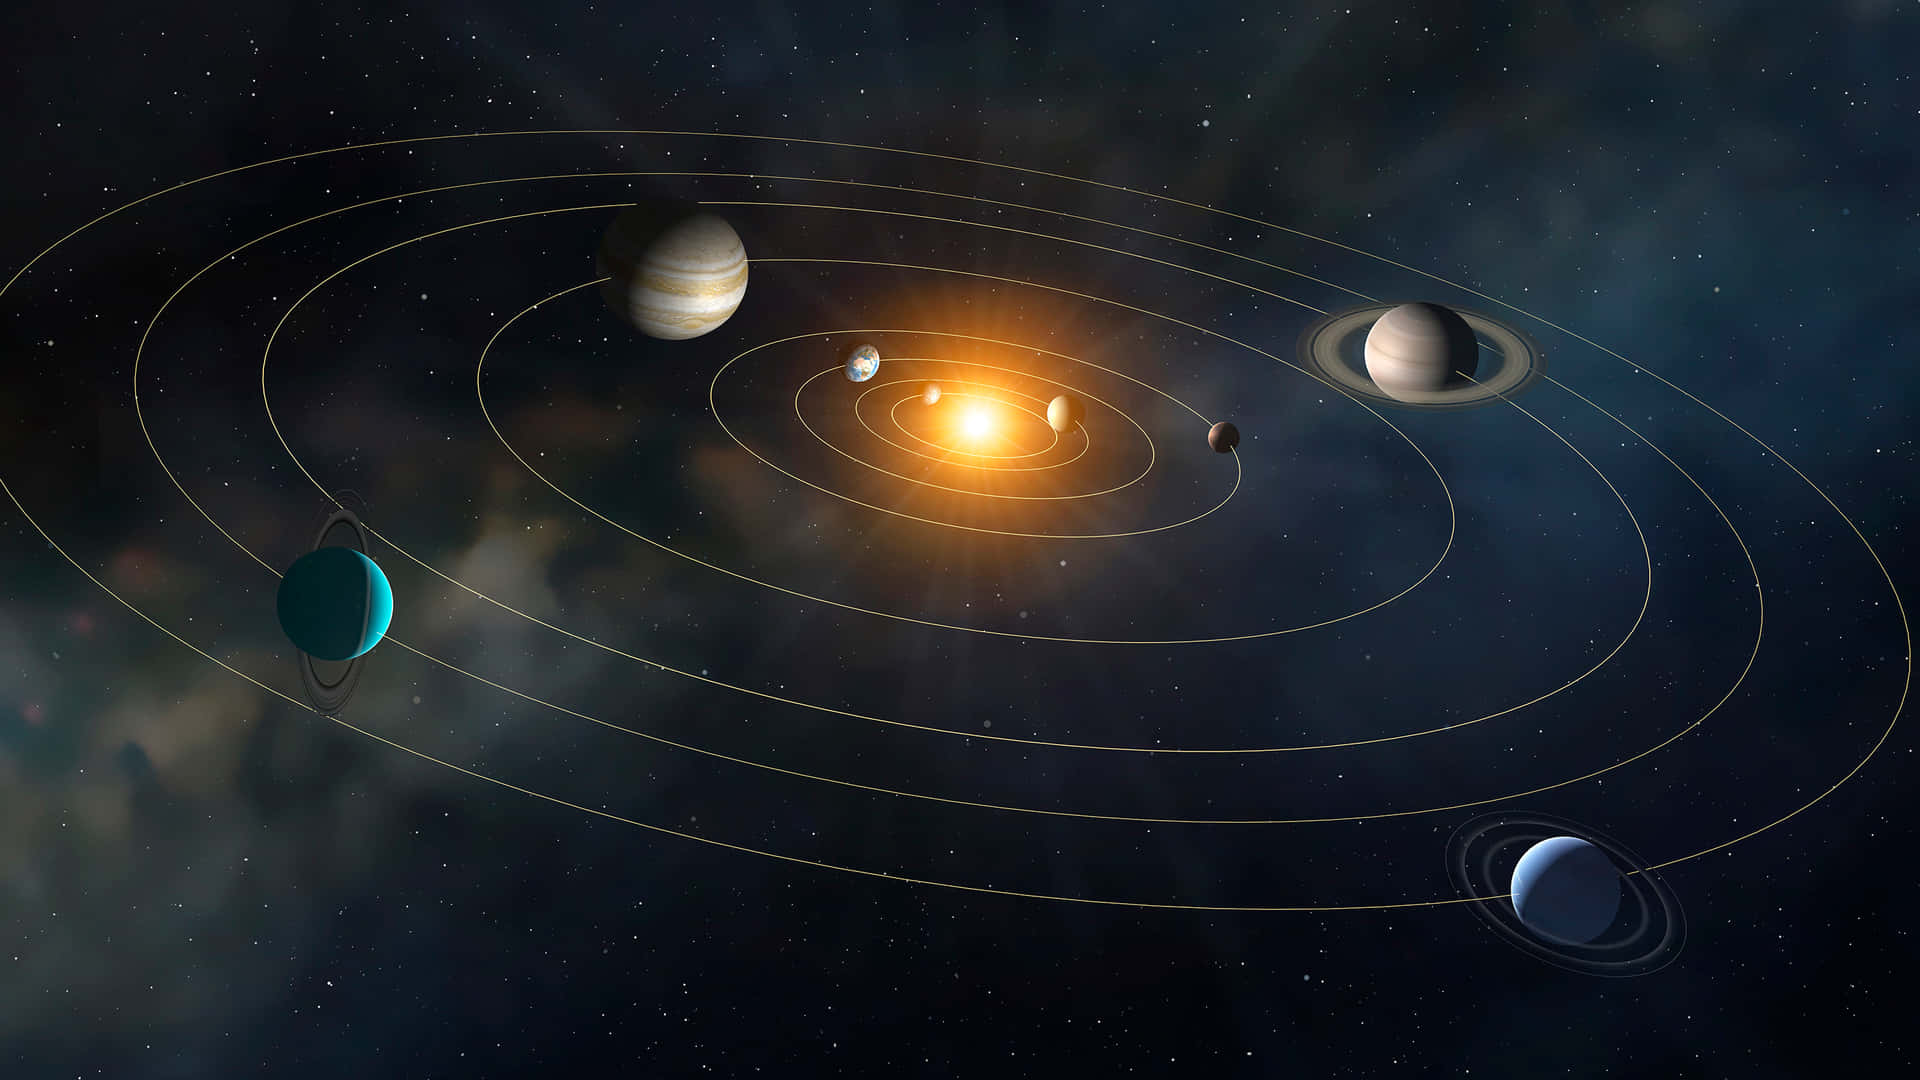 Imagemimpressionante Do Sistema Solar.